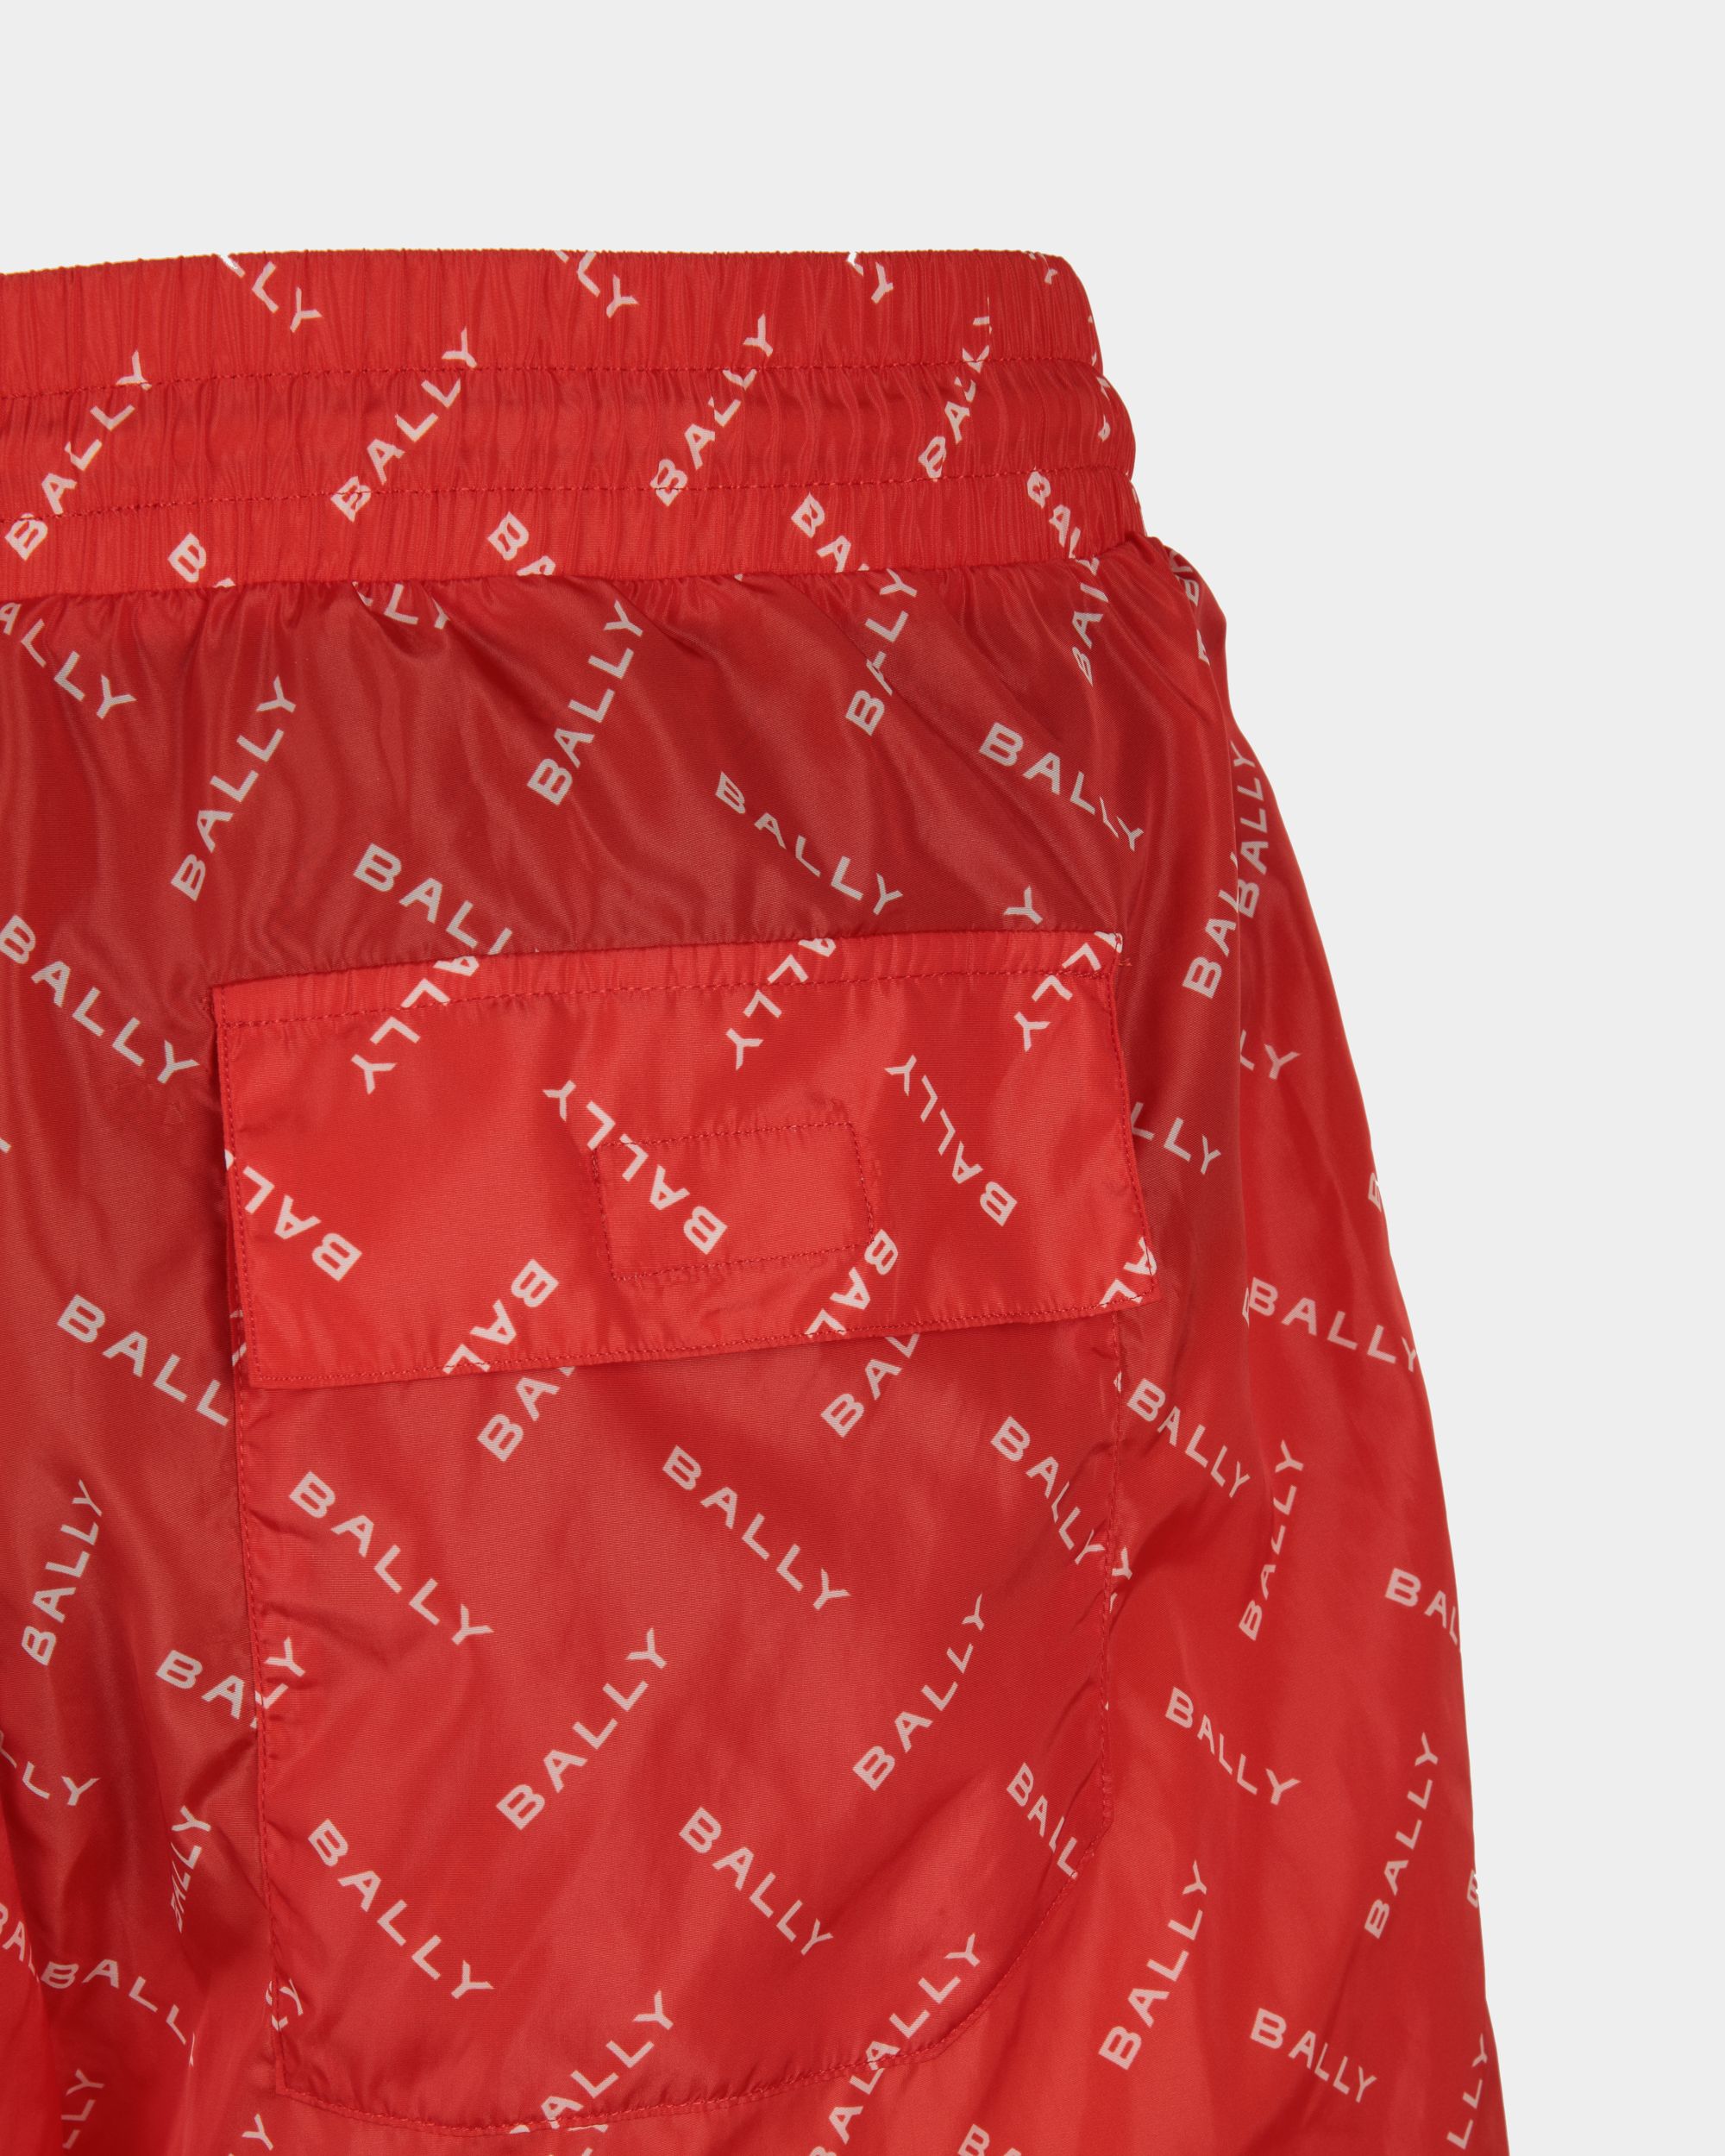 Badehose für Herren aus Stoff in Rot| Bally | Model getragen Detail